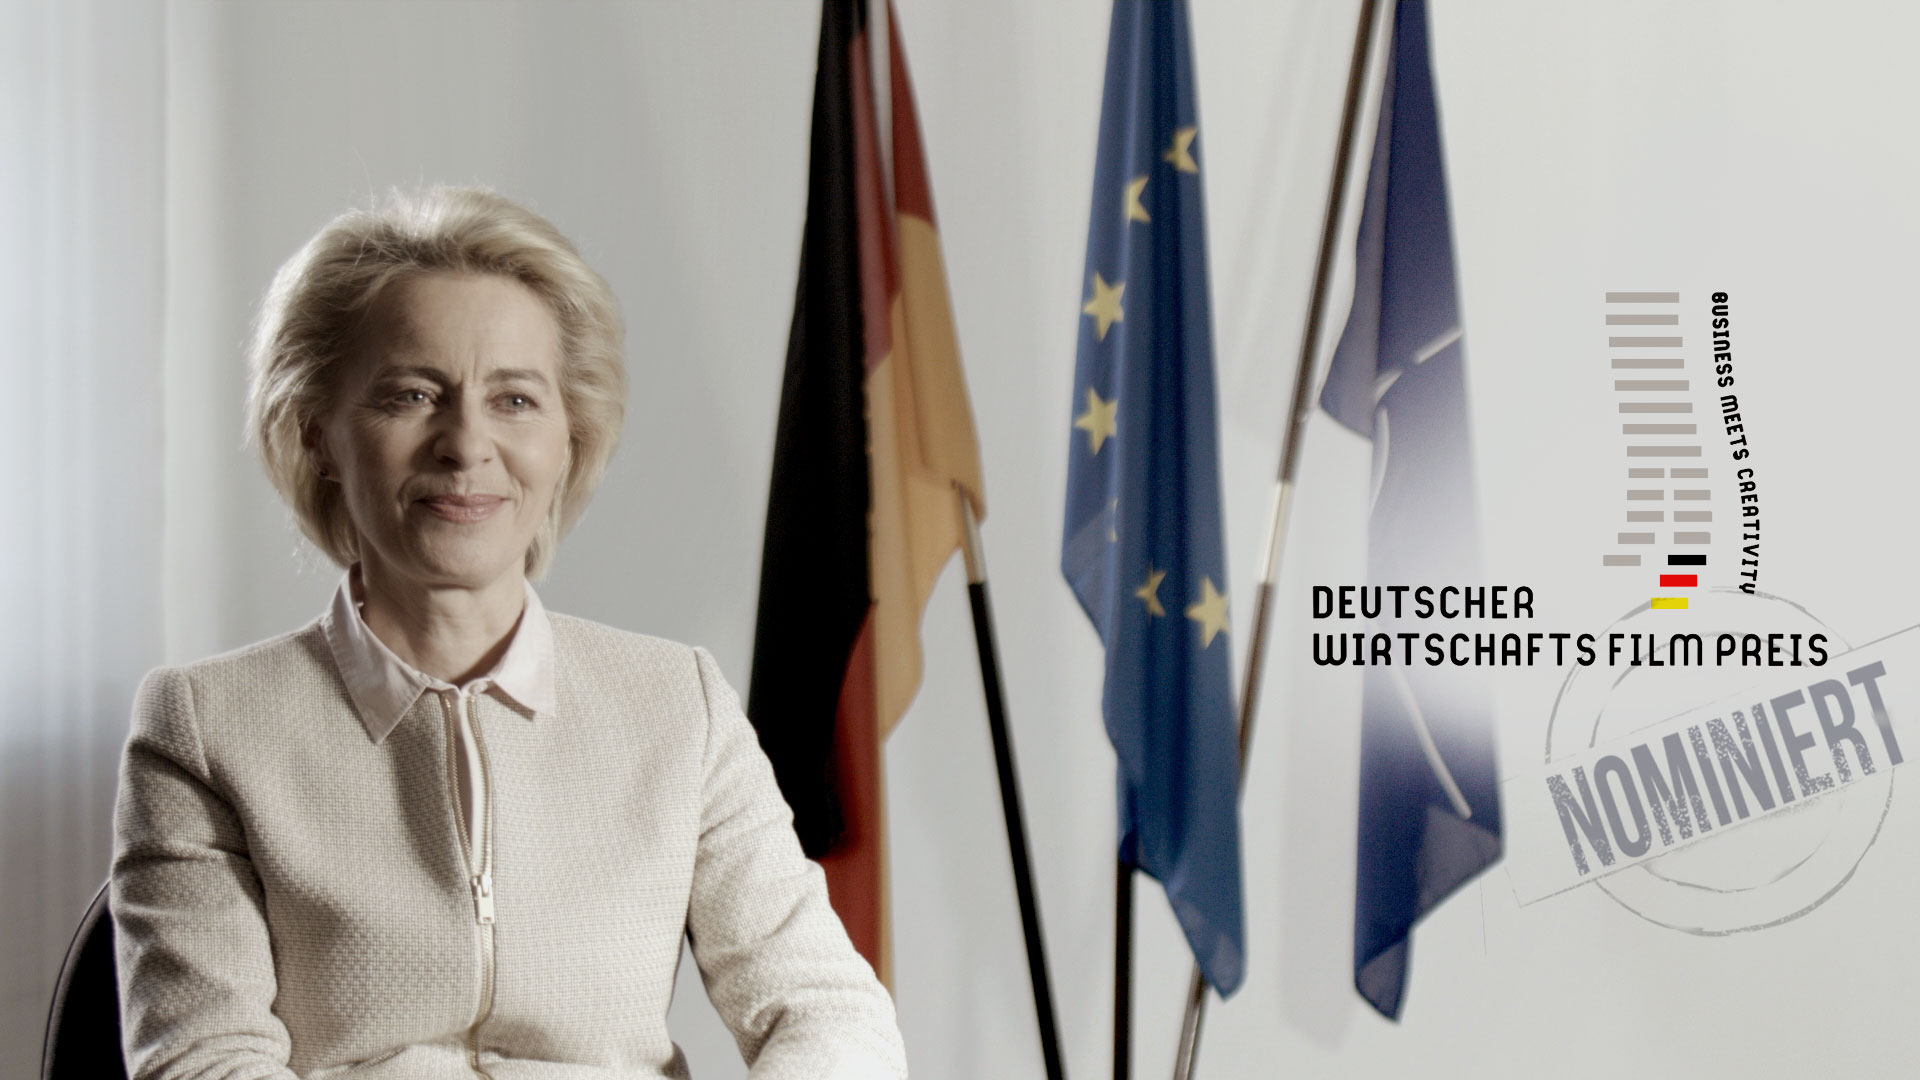 Ursula von der Leyen_al Dente Entertainment_Deutscher Wirtschaftsfilmpreis